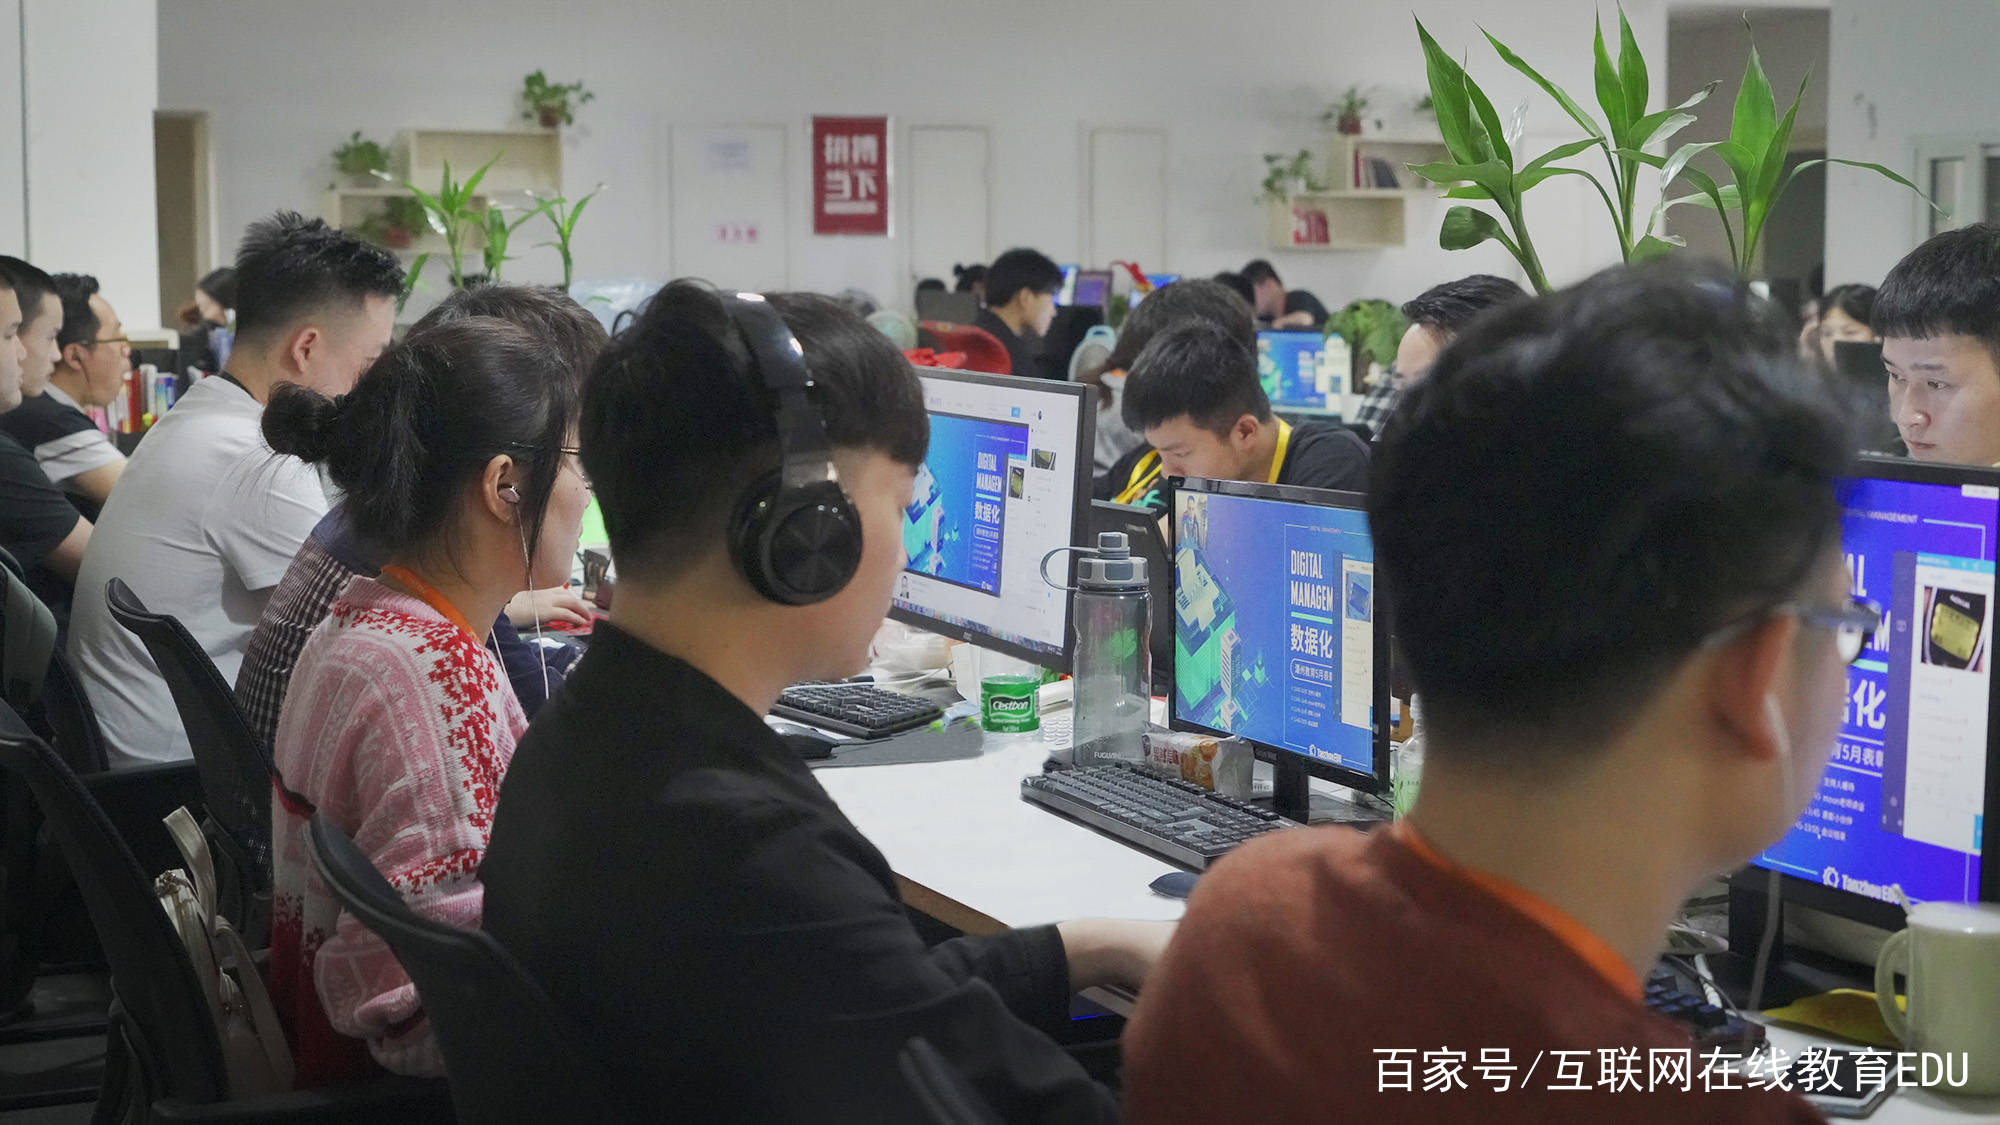 潭州教育外语课程,使在线学习更高效